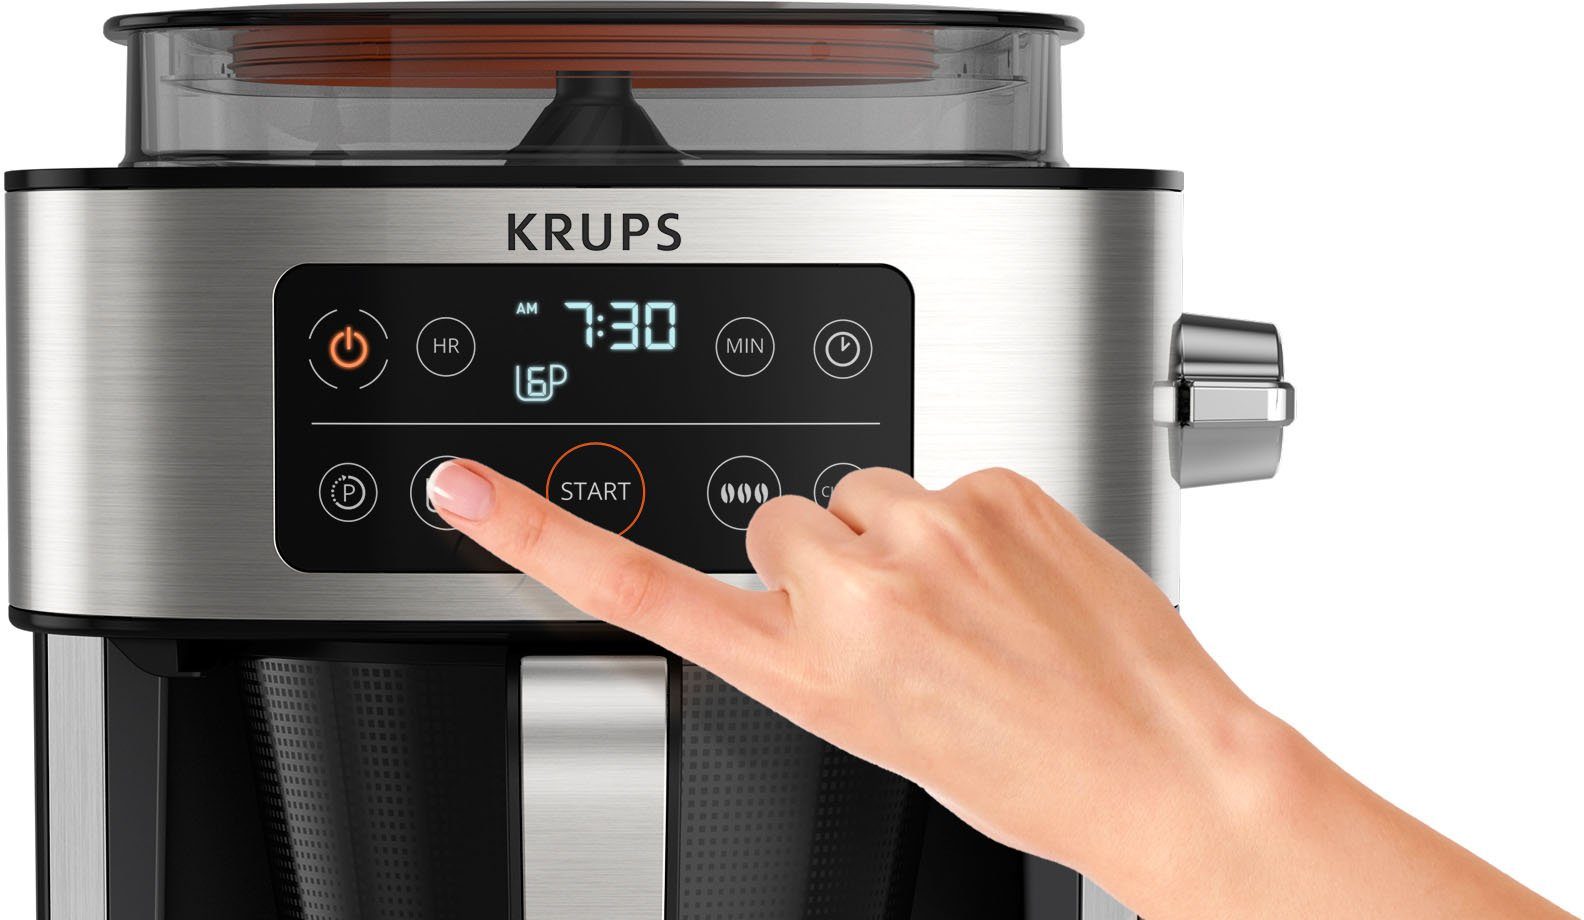 Aroma 400 integrierte Filterkaffeemaschine Kaffee-Vorratsbox 1,25l frischen Krups Kaffee zu bis KM760D Kaffeekanne, Partner, g für